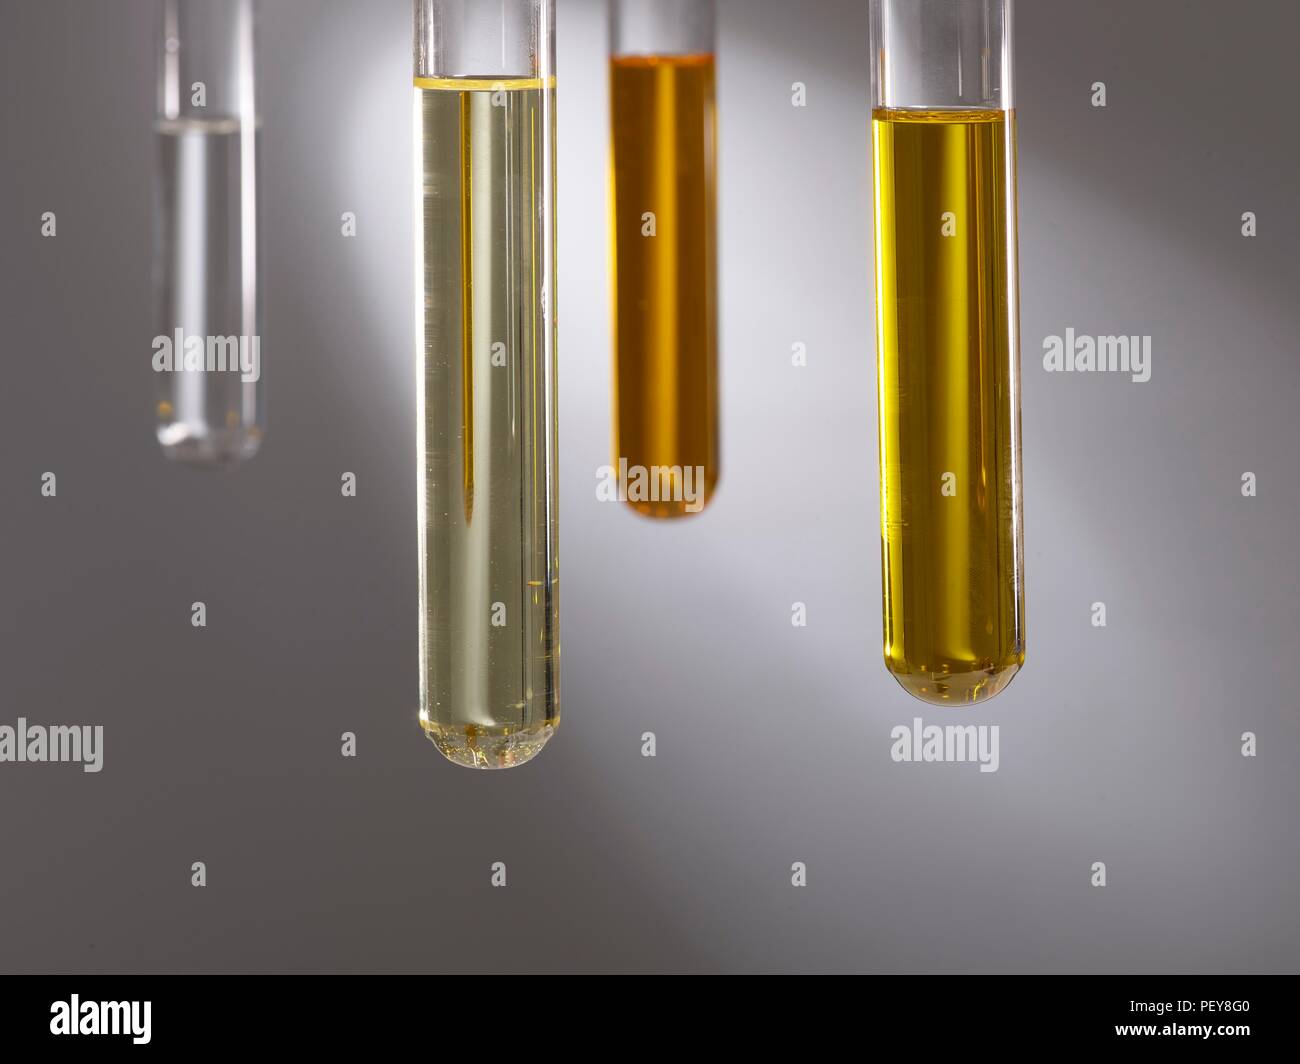 Los aceites de cocina en tubos de ensayo, Foto de estudio. Foto de stock